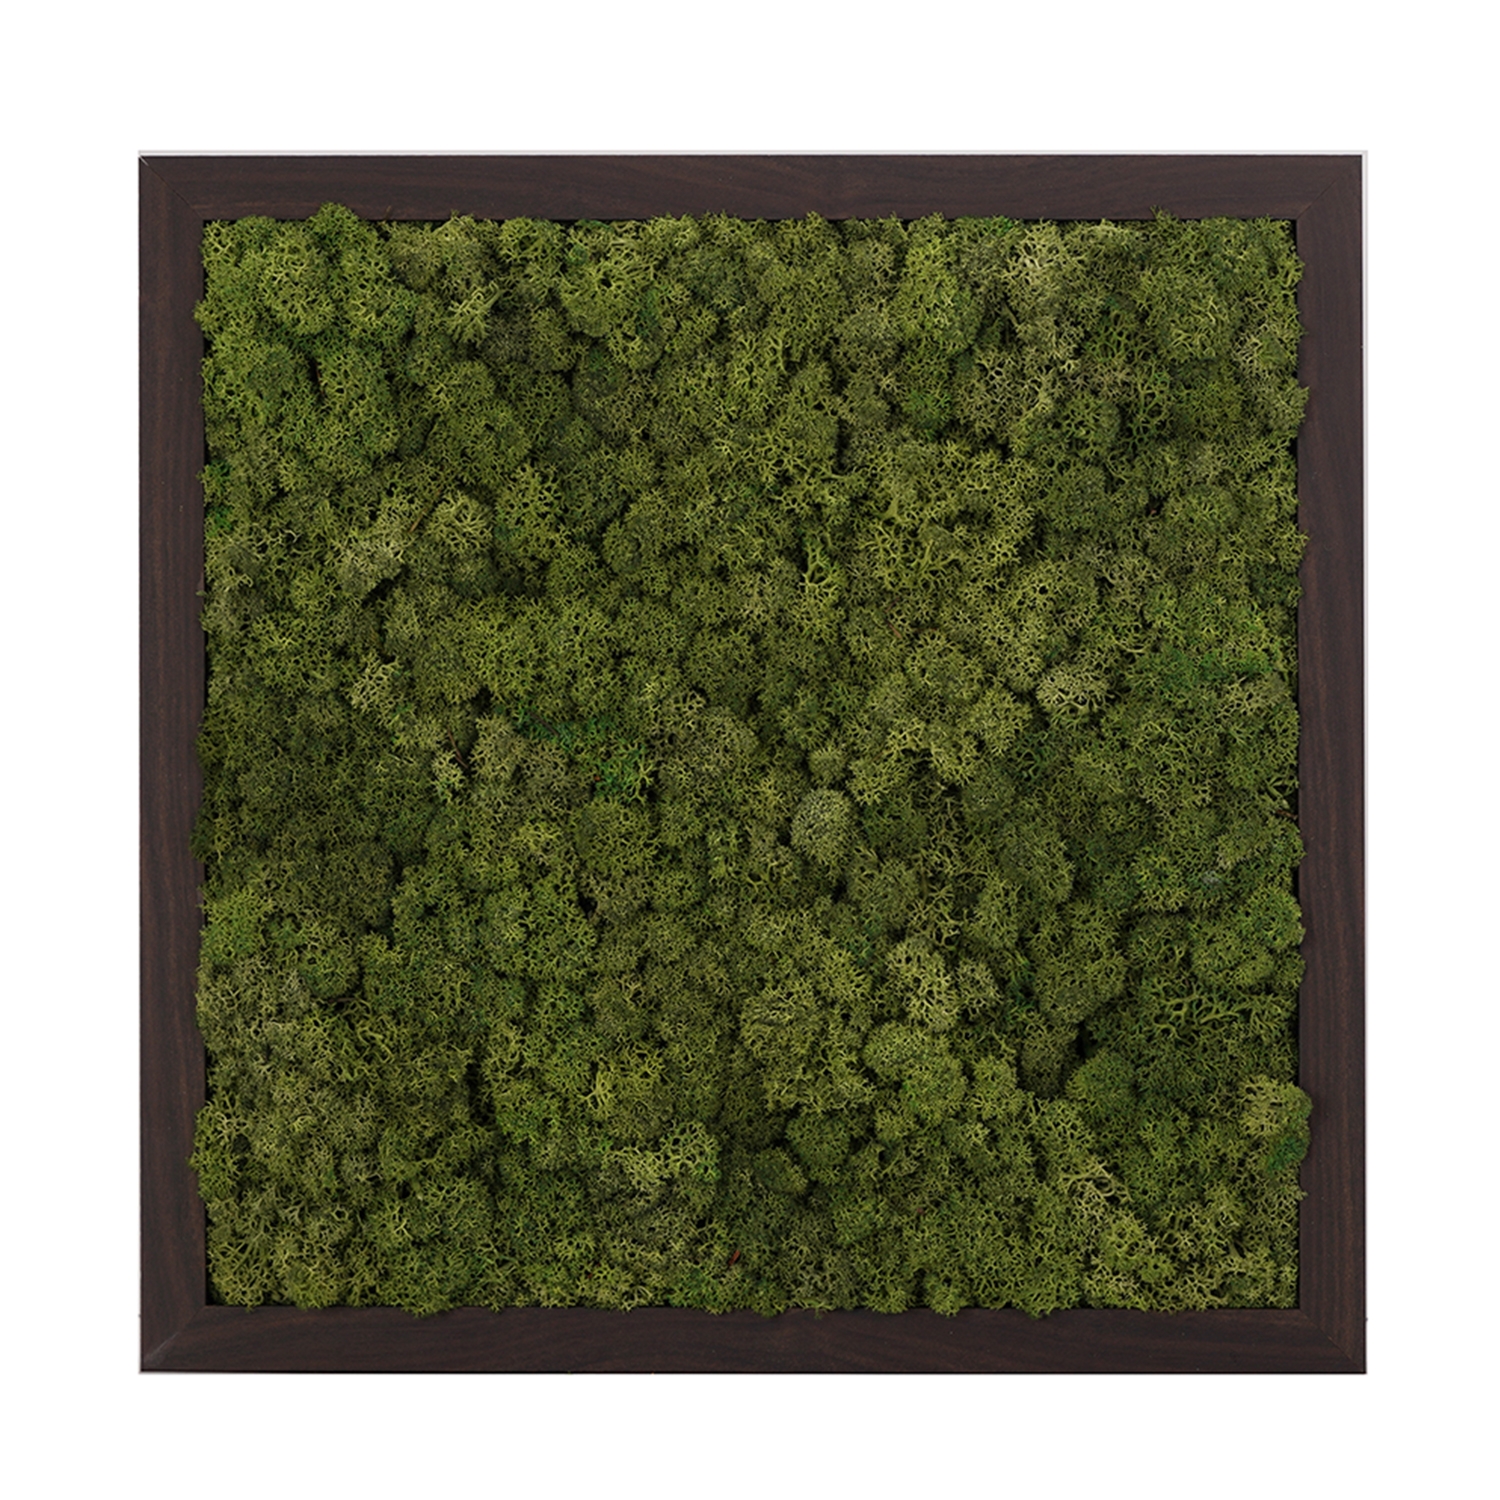 스칸디아모스액자 프라모 프레임_월넛 ( 25색상 )실내 공기정화식물 벽면인테리어소품 천연이끼 스칸디아모스 식물액자 플랜테리어